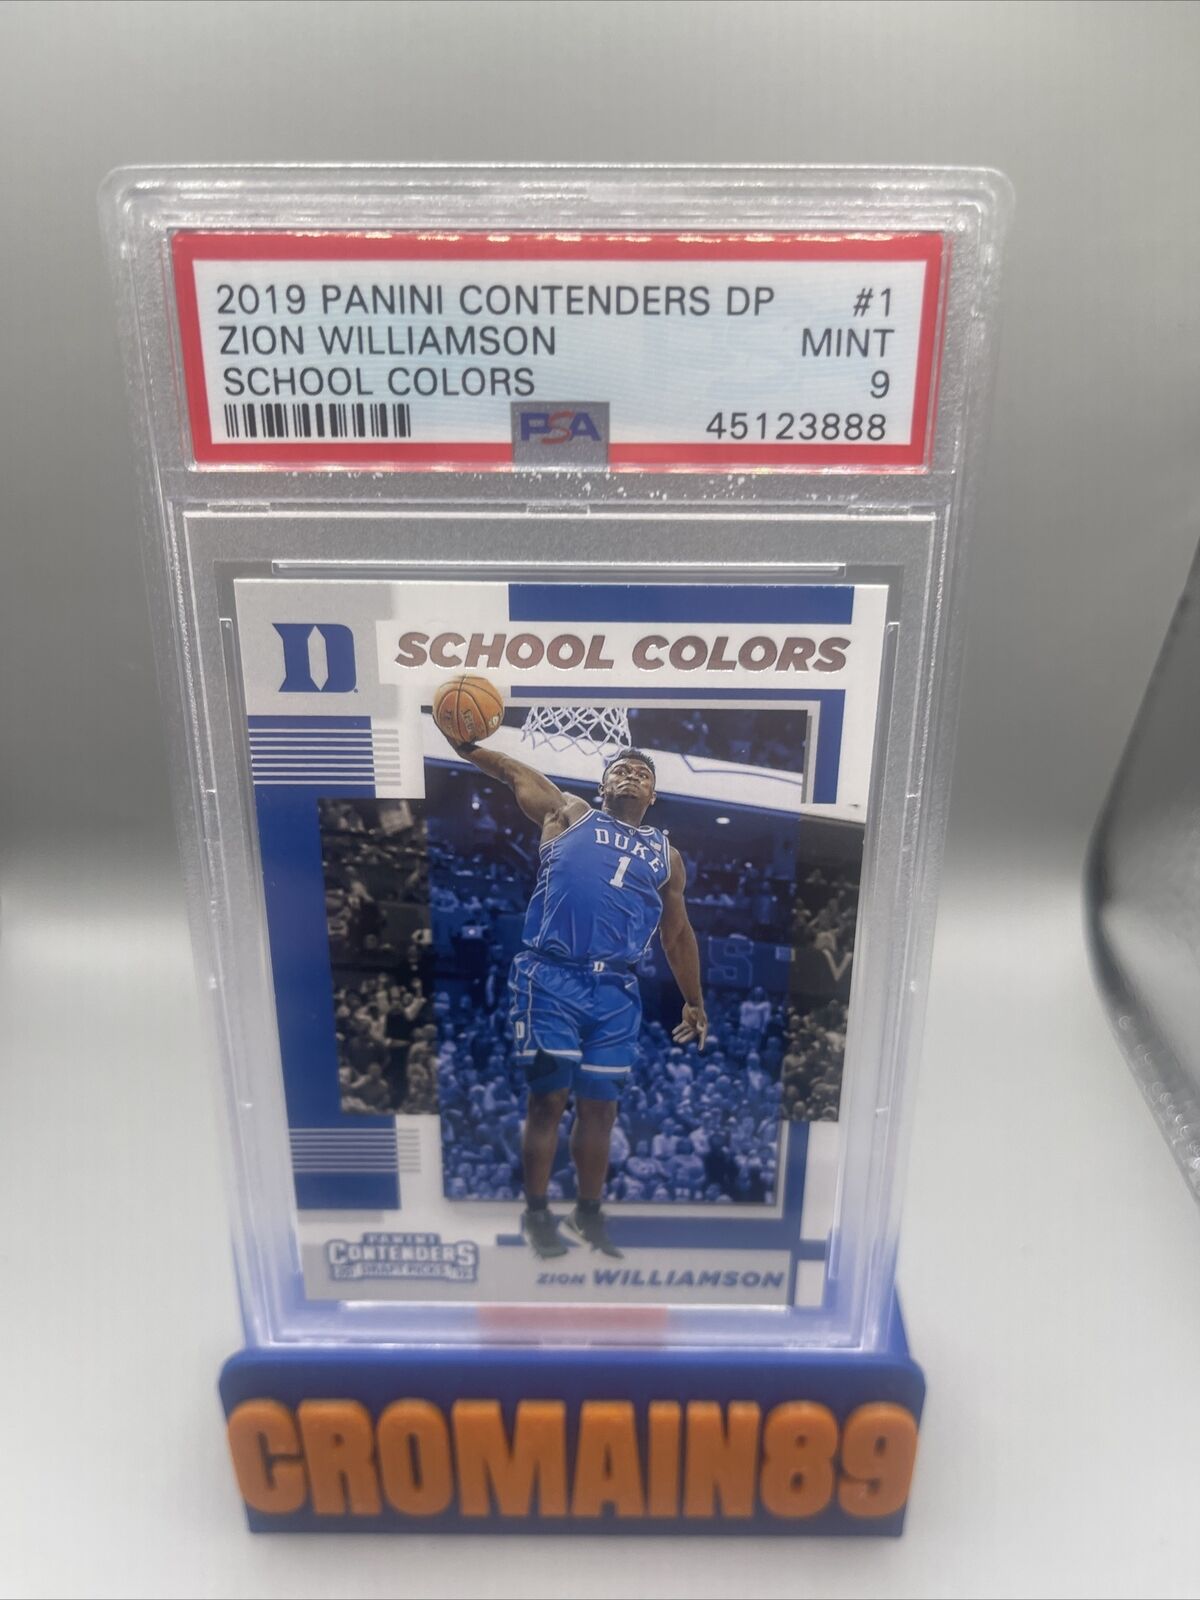 2019 Panini Contenders DP School Colors #1 Zion Williamson RC Rookie PSA 9 MINT